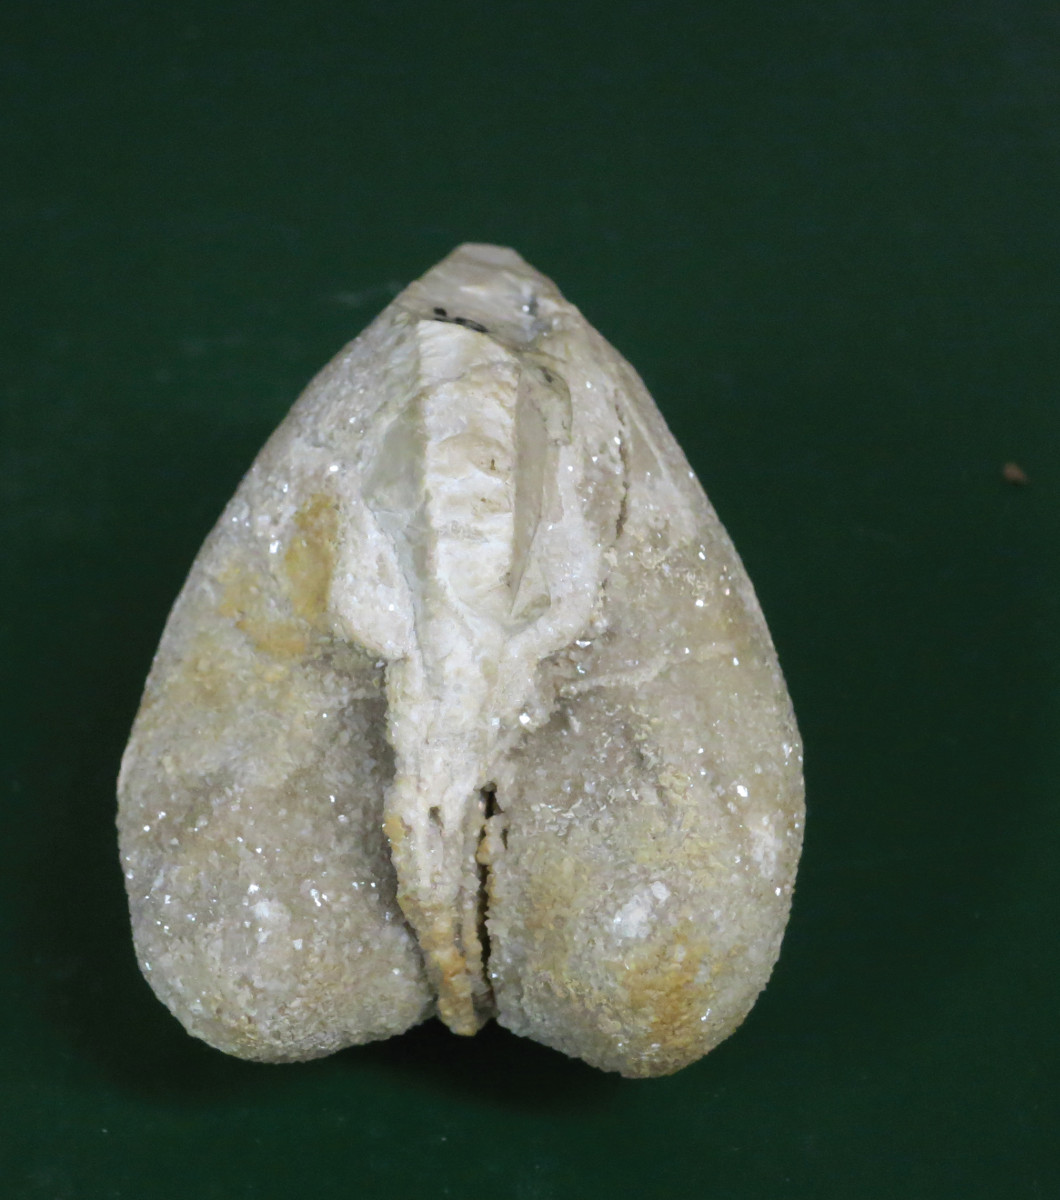 Pannello 6 - Foto 2: Esemplare di Megalodon gumbeli, un mollusco bivalve vissuto nei bassi fondali dell'oceano della Tetide circa 220 milioni di anni fa